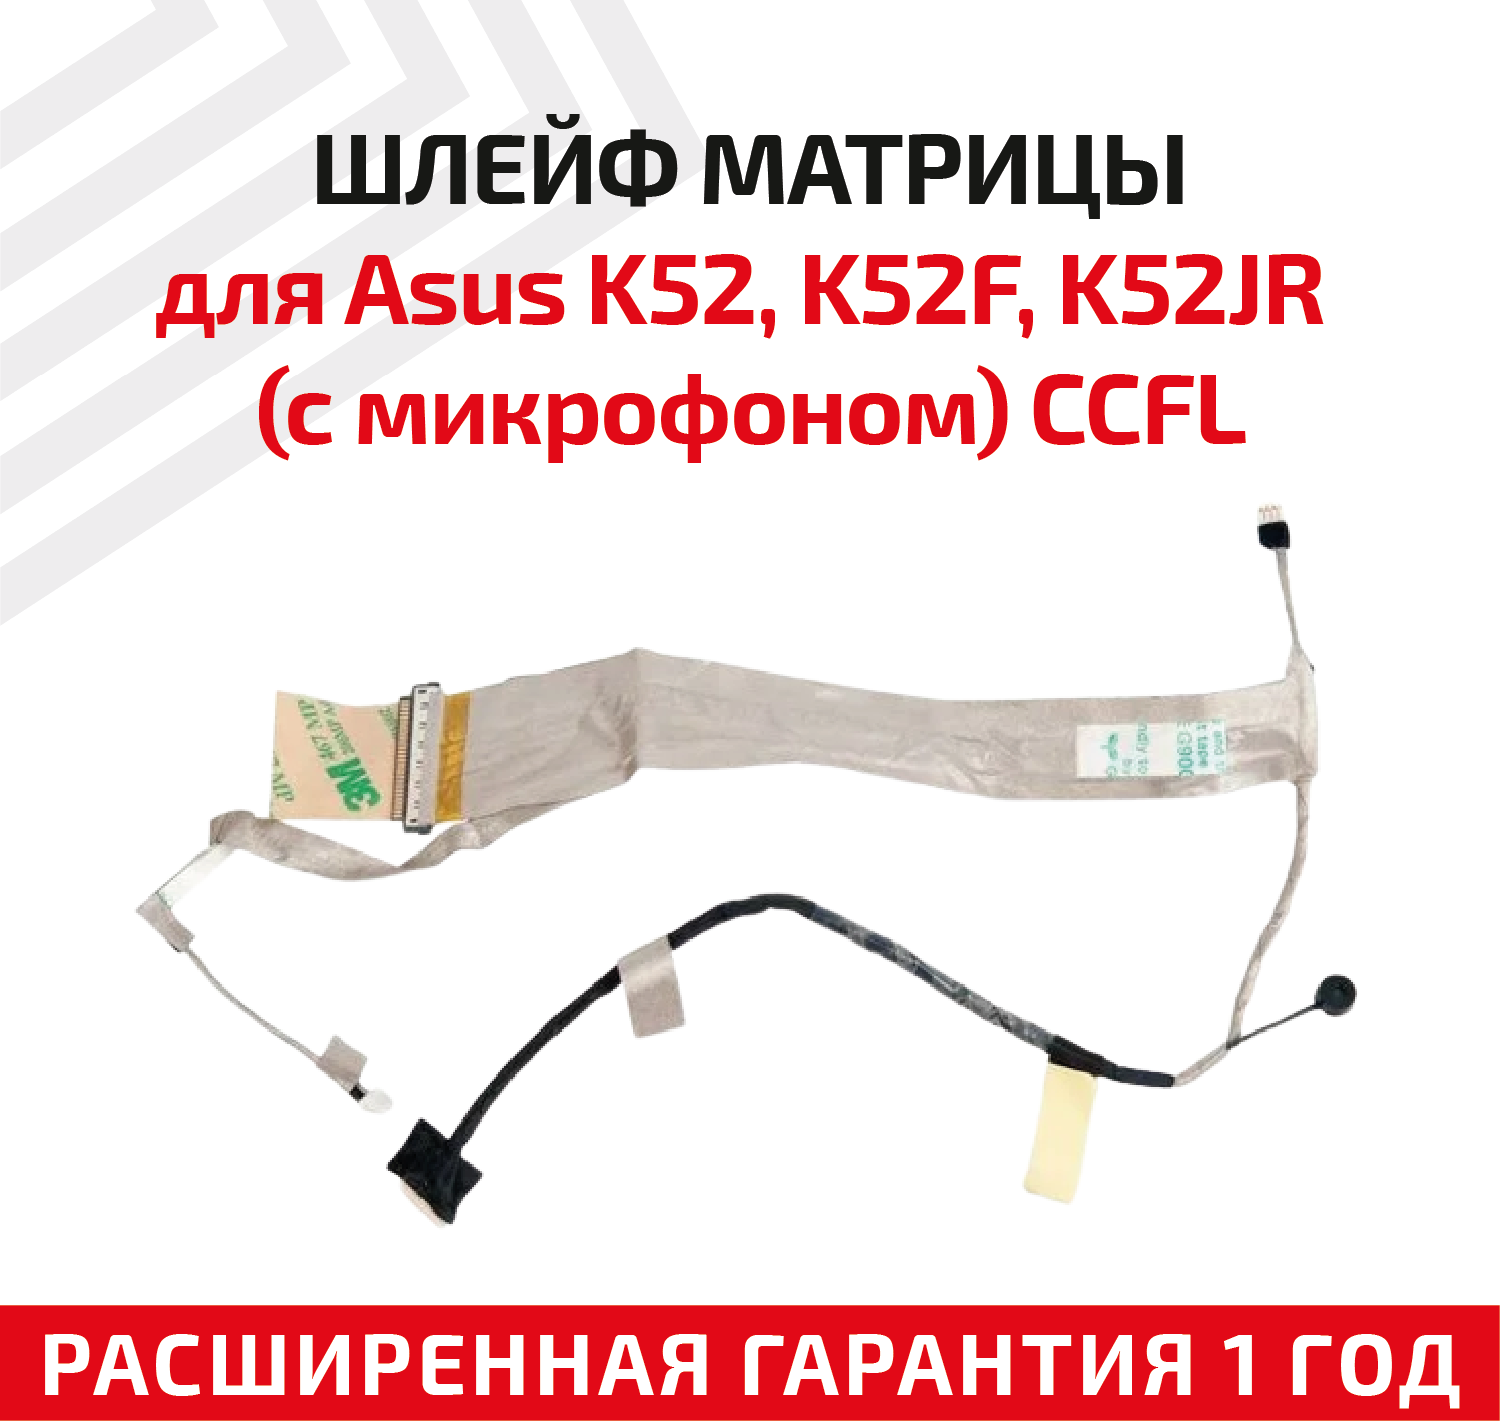 Шлейф матрицы для ноутбука Asus K52, K52F, K52JR (с микрофоном) CCFL 7600522